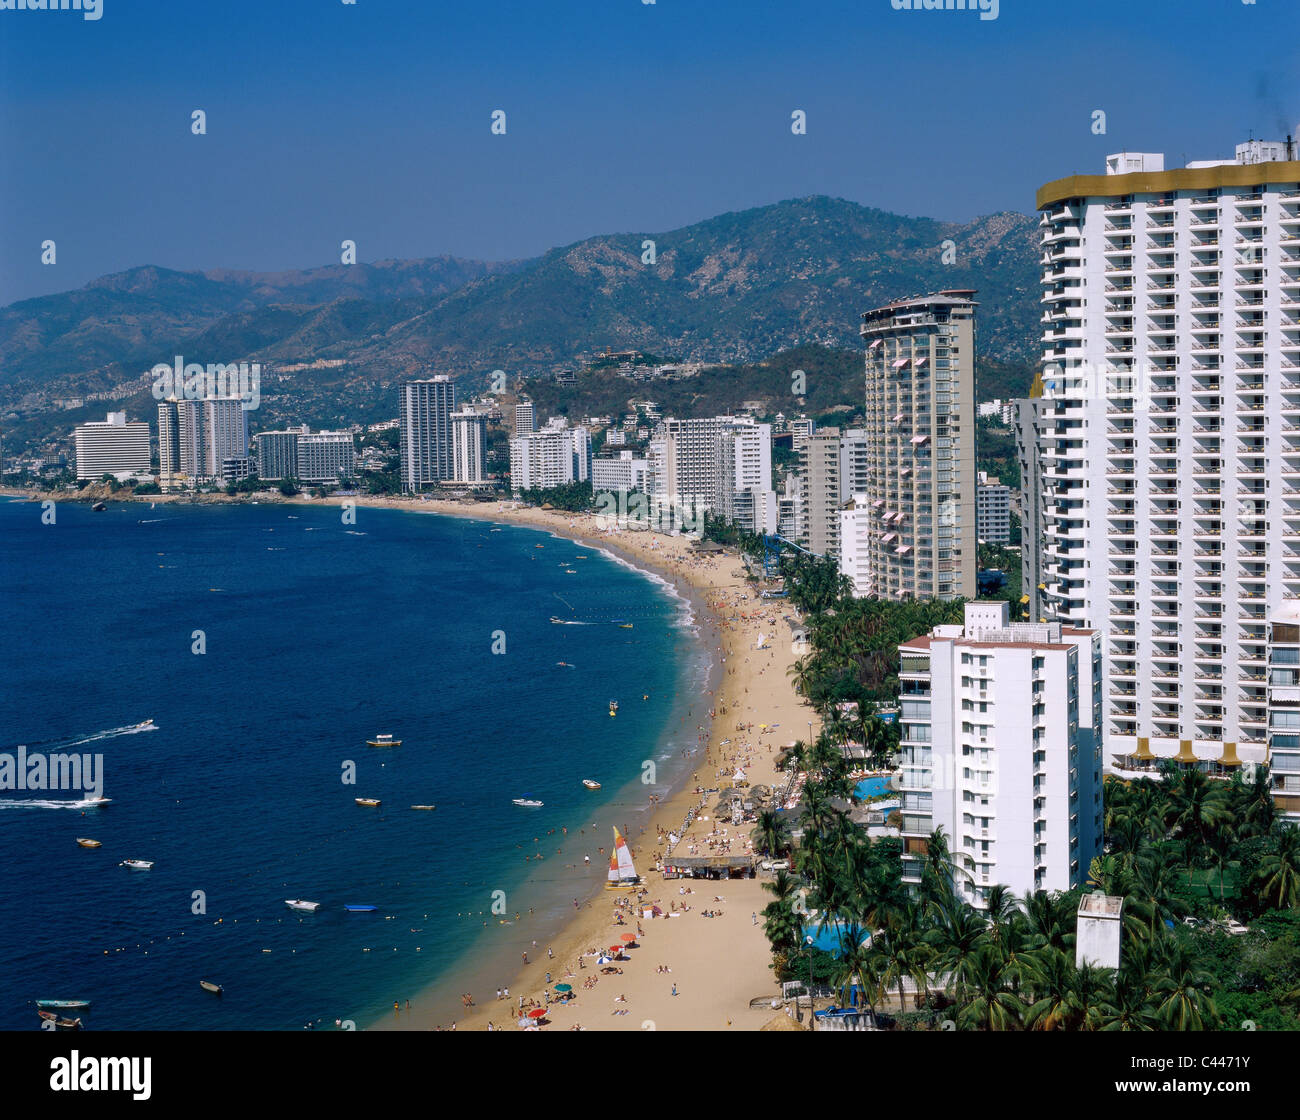 acapulco tourisme